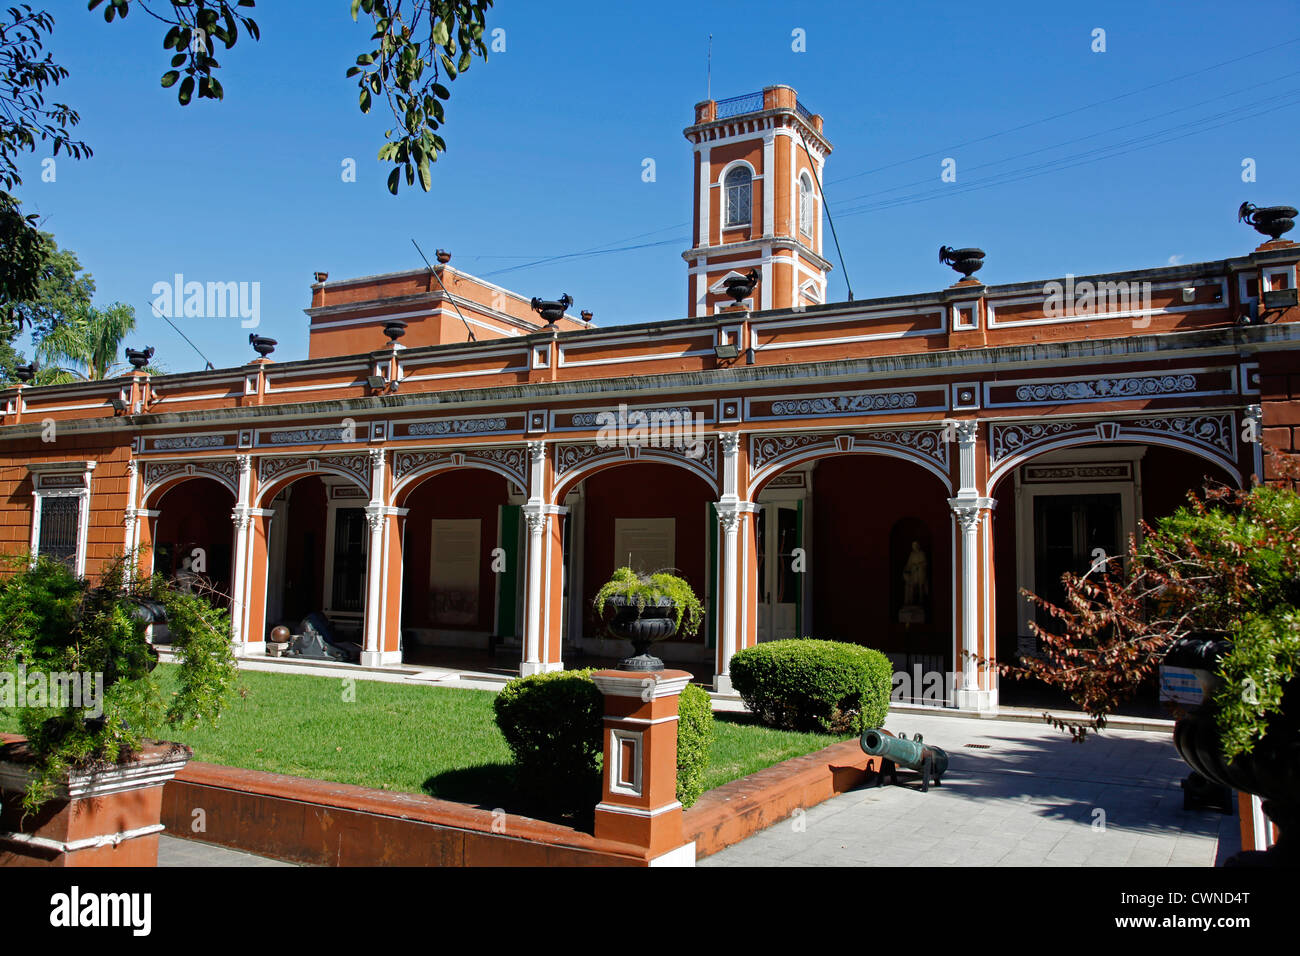 Museo Histórico Nacional oder nationale Geschichtsmuseum in San Telmo, Buenos Aires, Argentinien. Stockfoto